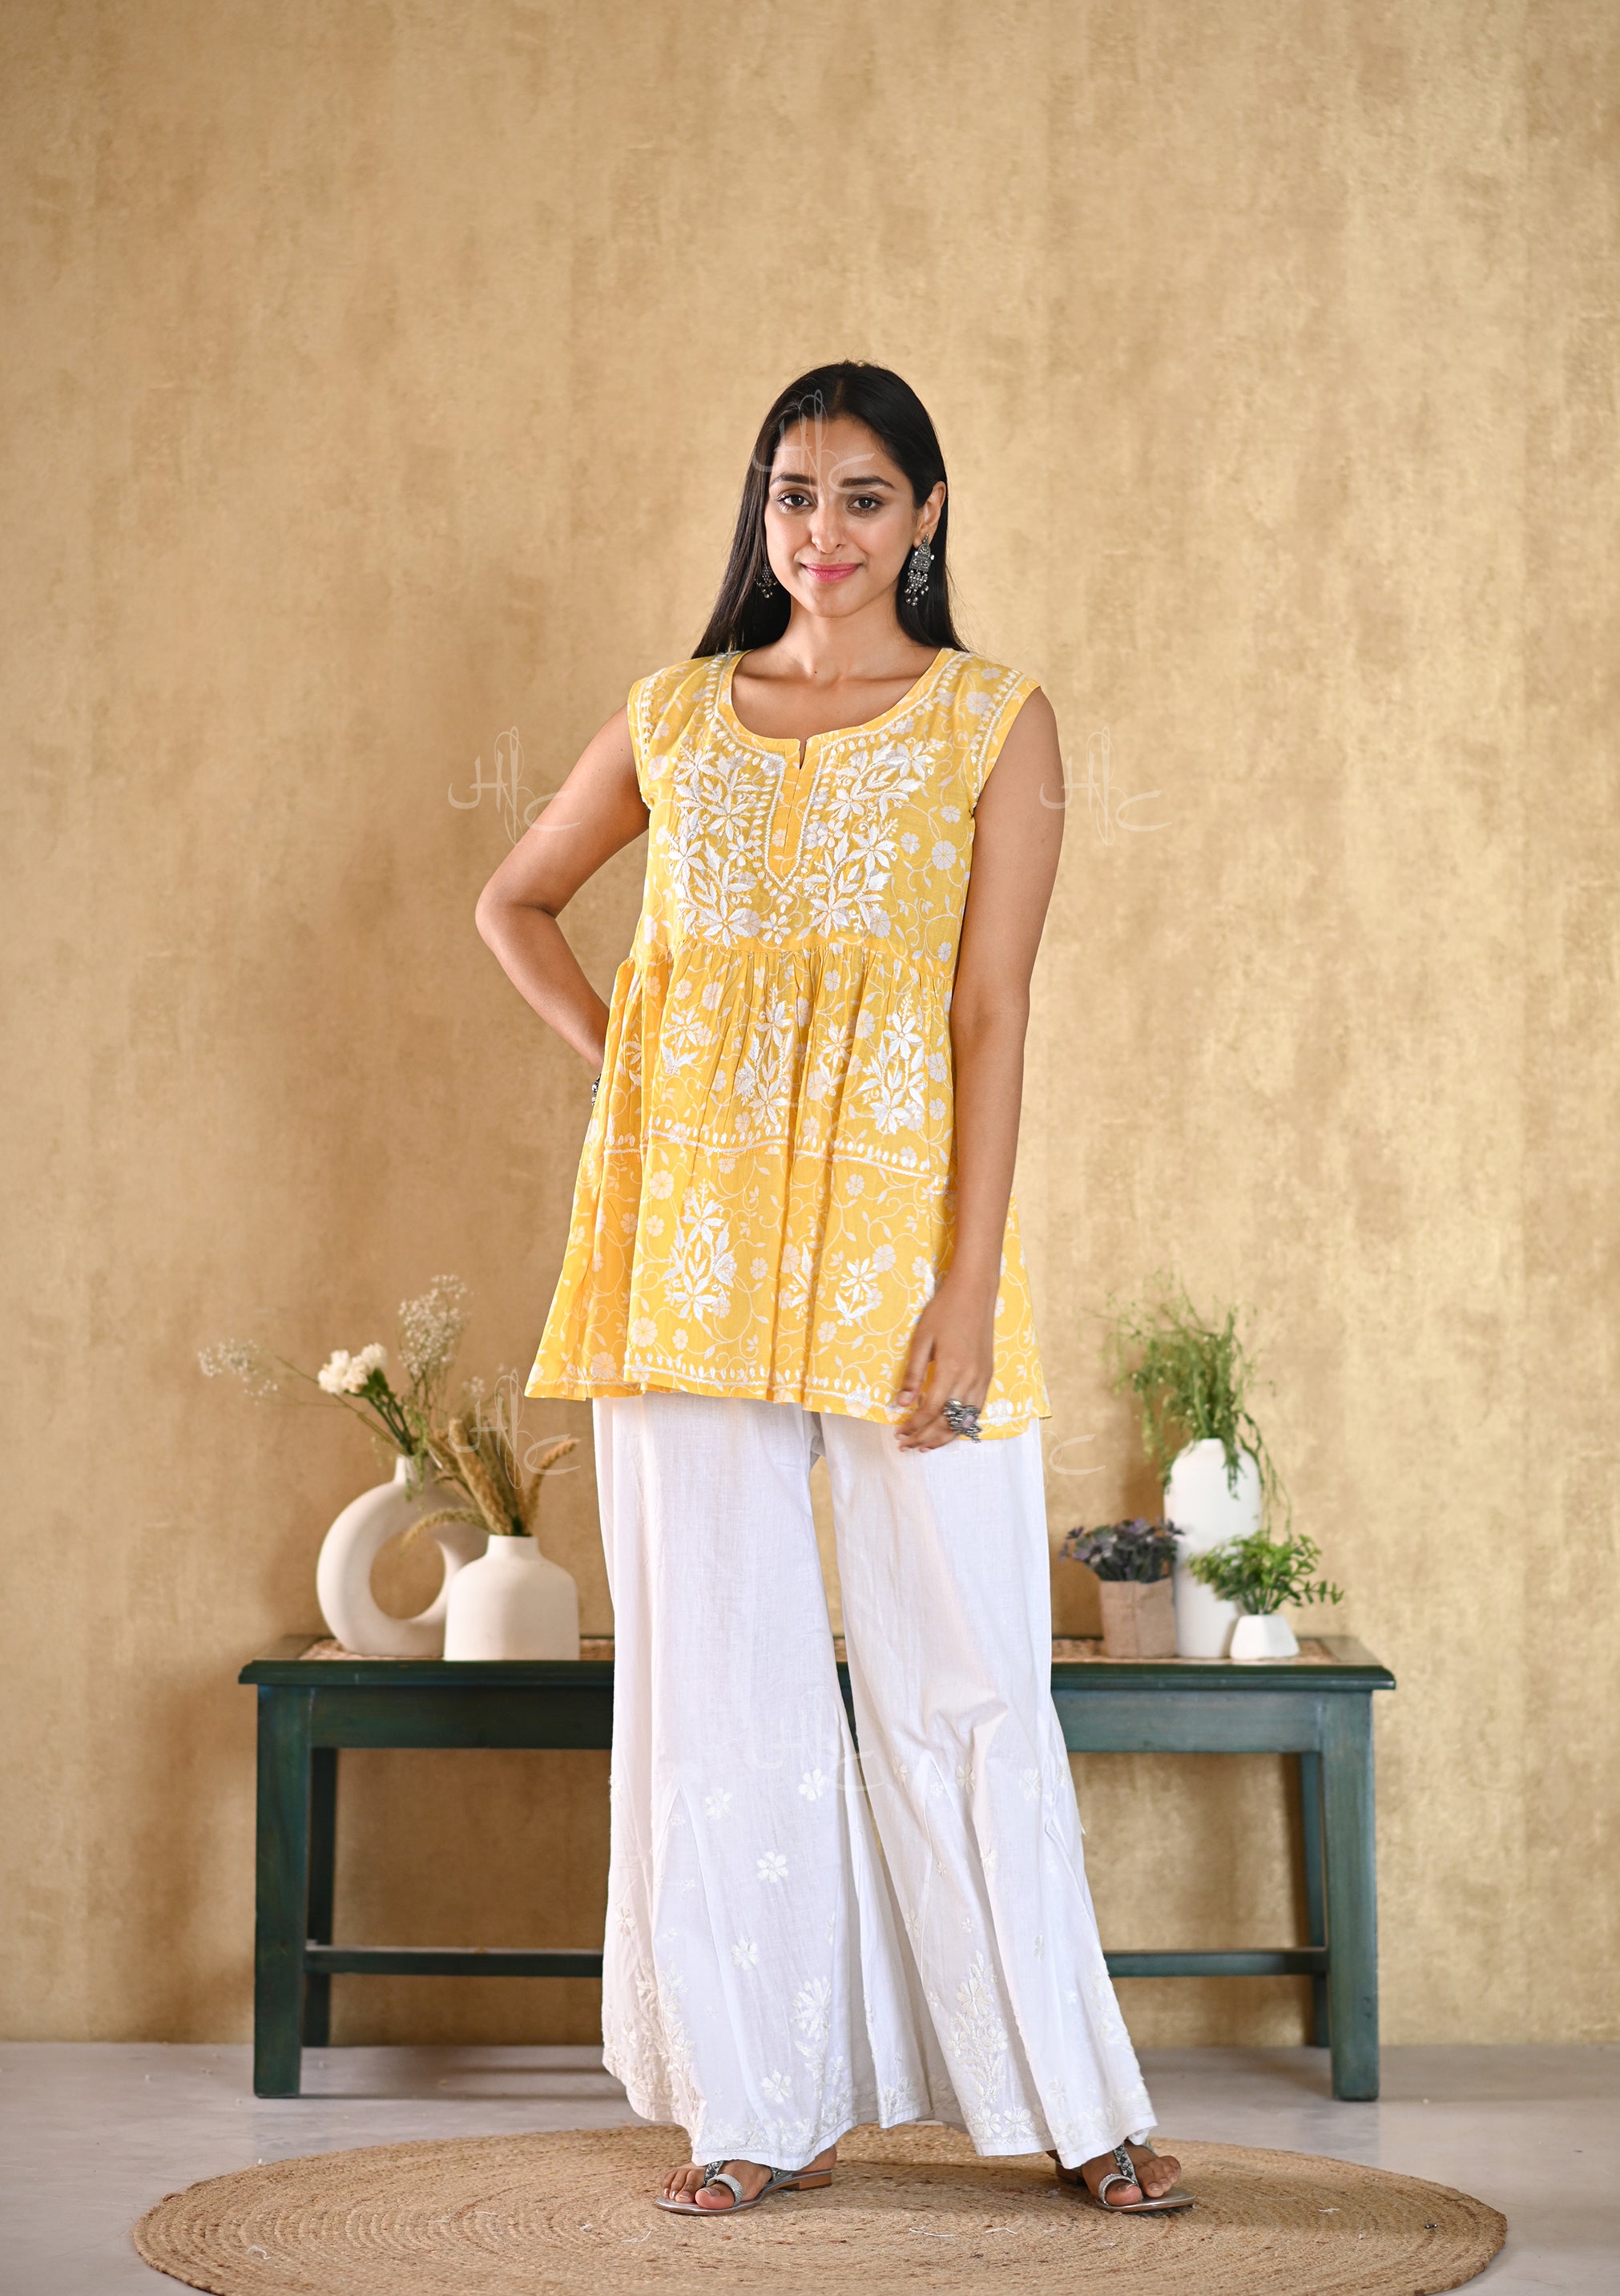 Kurti Women Indian New Design Kurtis Cotton Top Short Kurtis Kurta Tunic  Blouse Plus Size Pant Palazzo Set Saree Punjabi Suit Readymade UD423BDSC |  Lazada